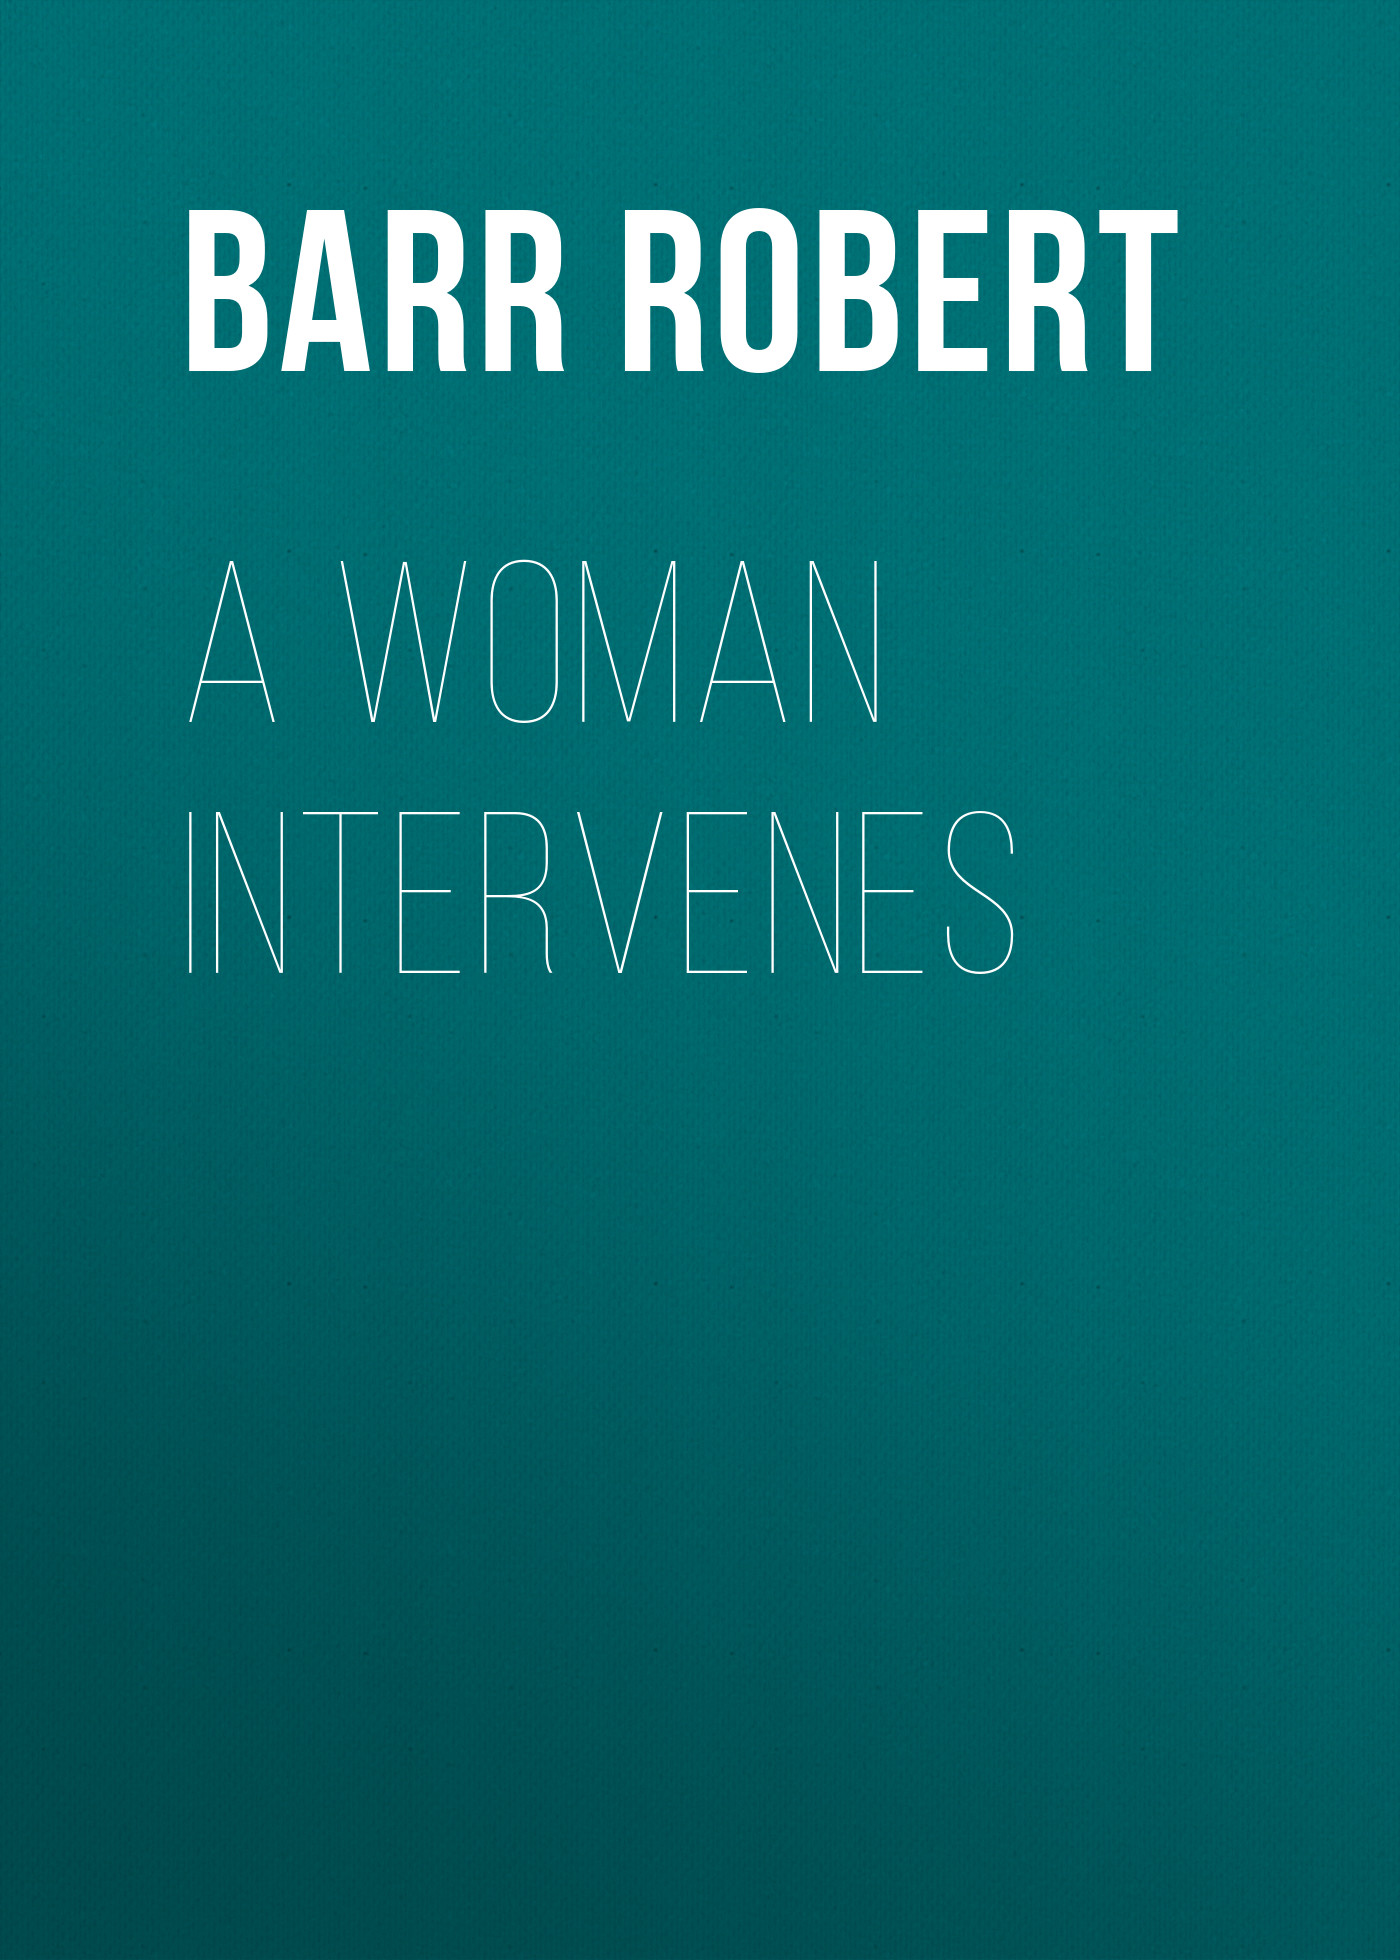 Книга A Woman Intervenes из серии , созданная Robert Barr, может относится к жанру Зарубежная классика, Зарубежная старинная литература. Стоимость электронной книги A Woman Intervenes с идентификатором 36366558 составляет 0 руб.